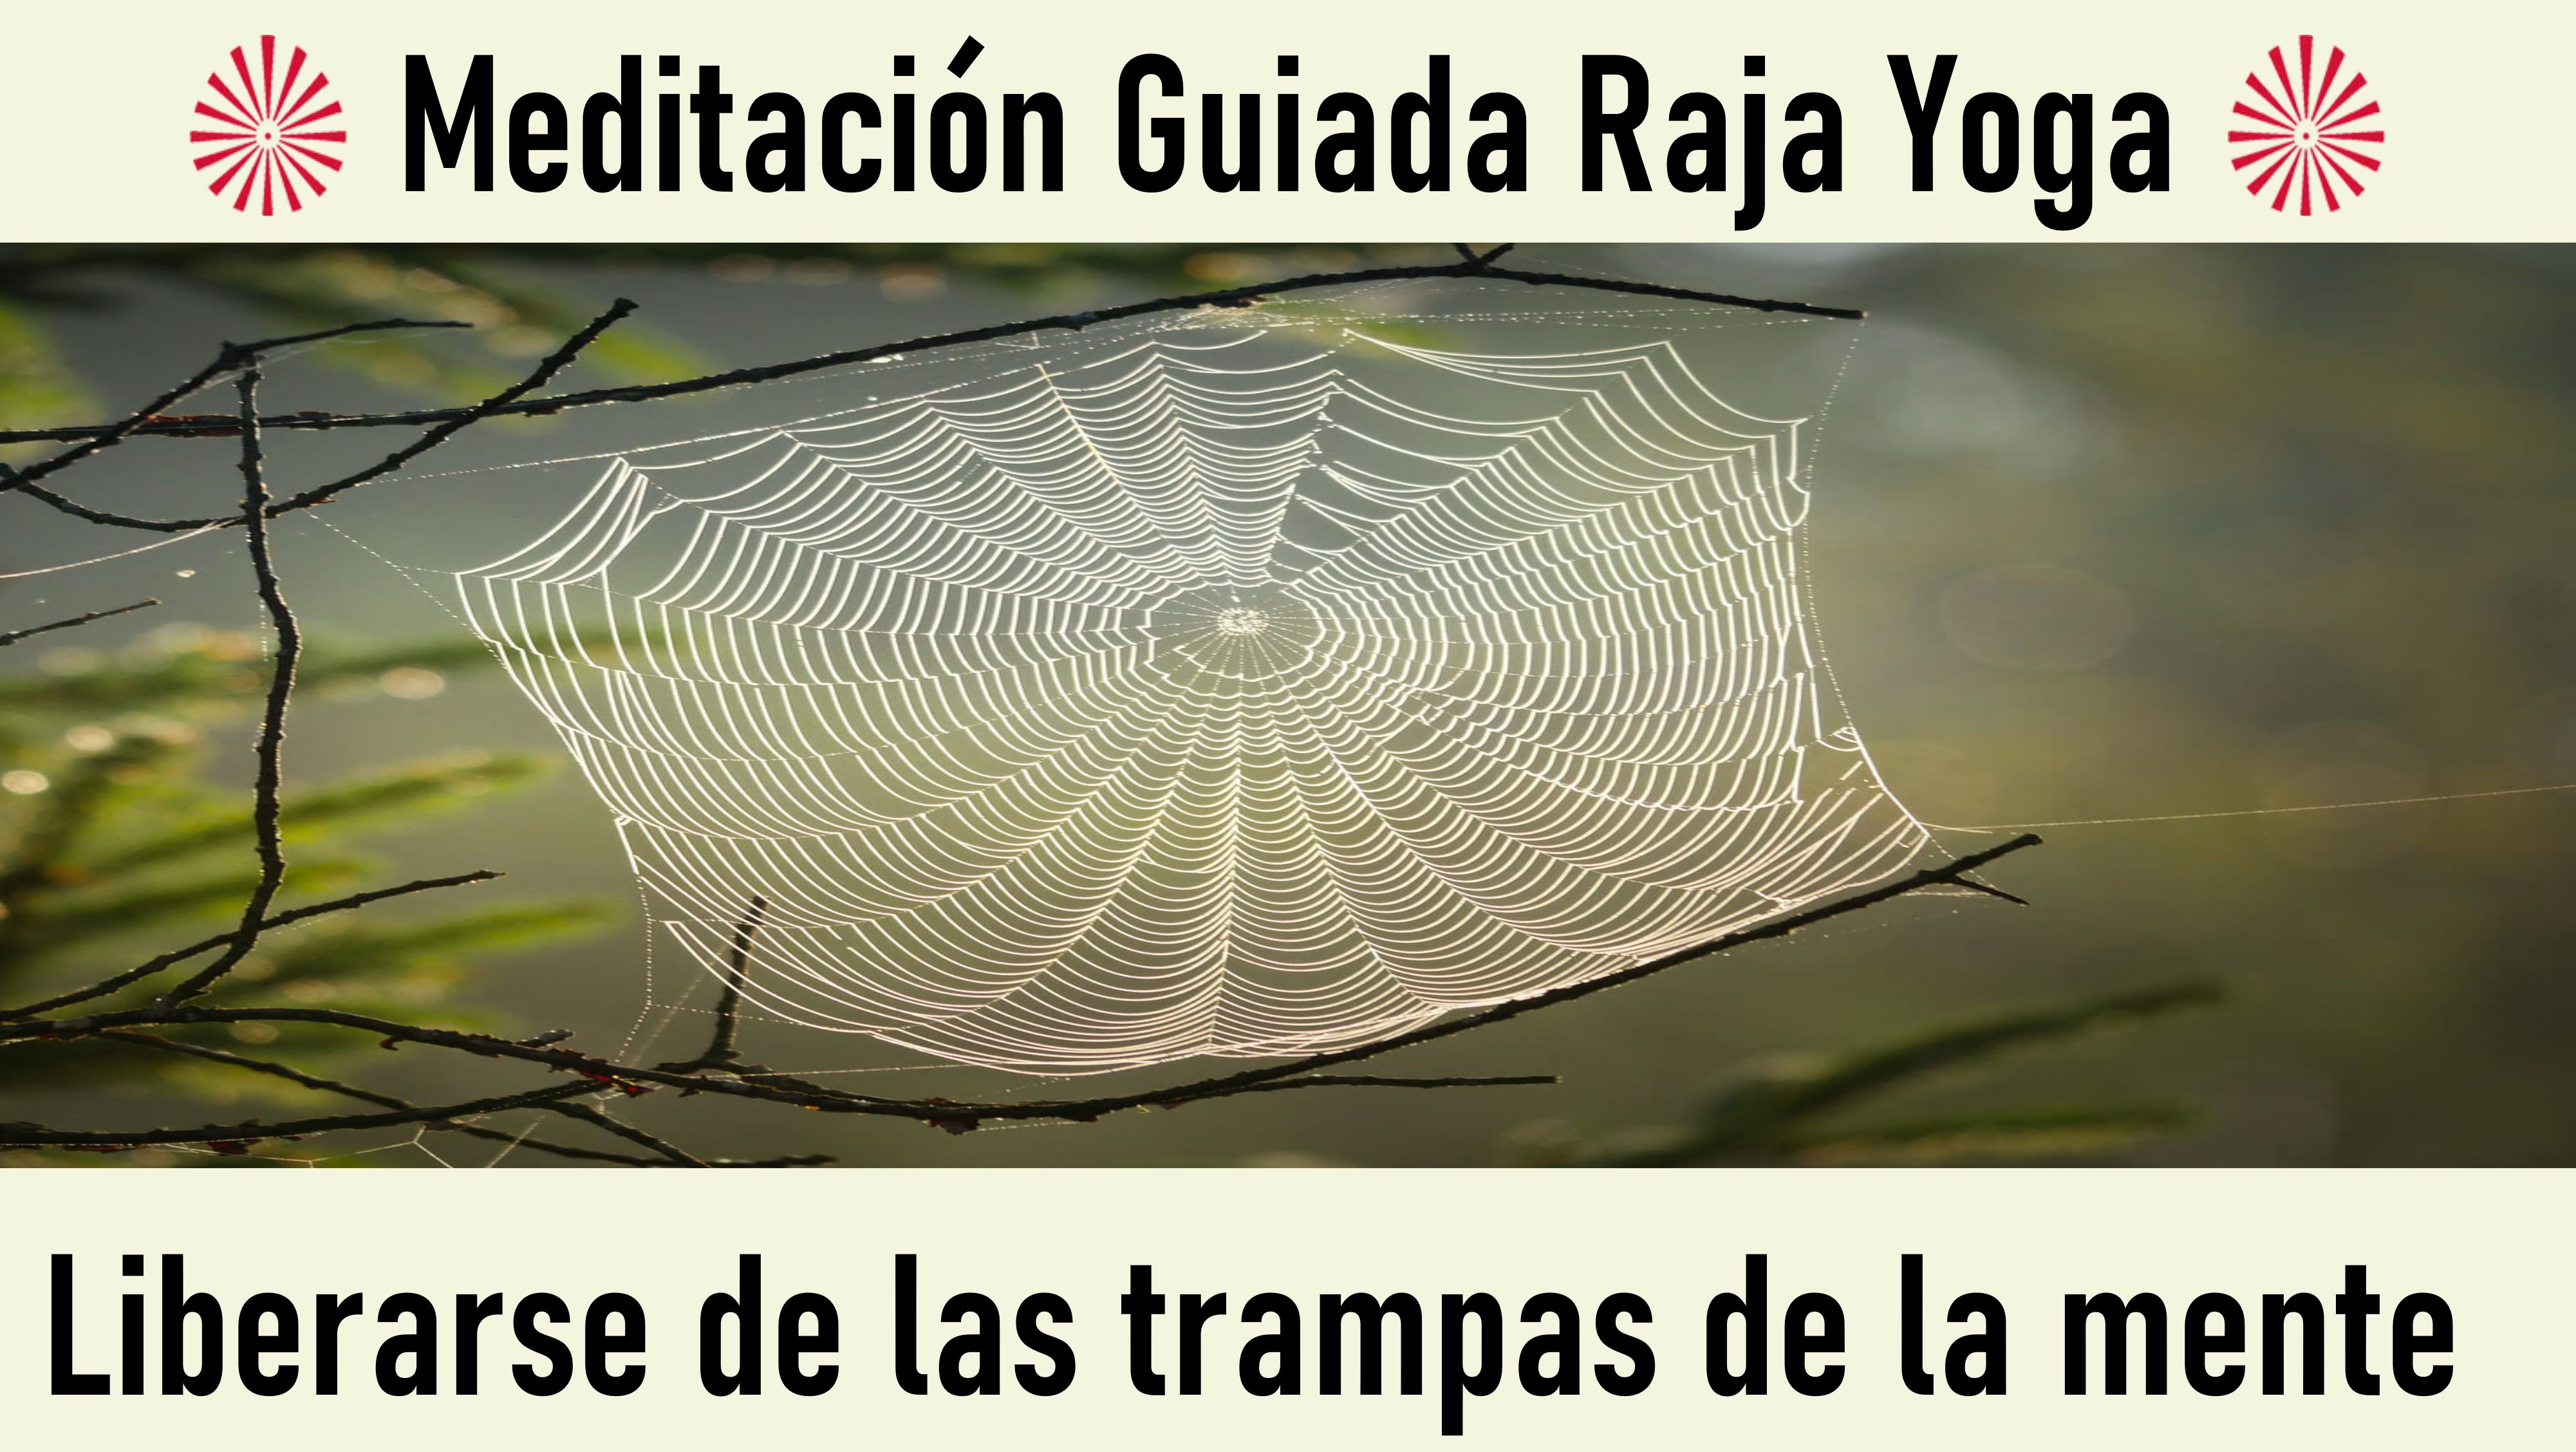 Charla y Meditación.Meditación Raja Yoga: Liberarse de las trampas de la mente (12 Mayo 2020)  On-line desde Madrid